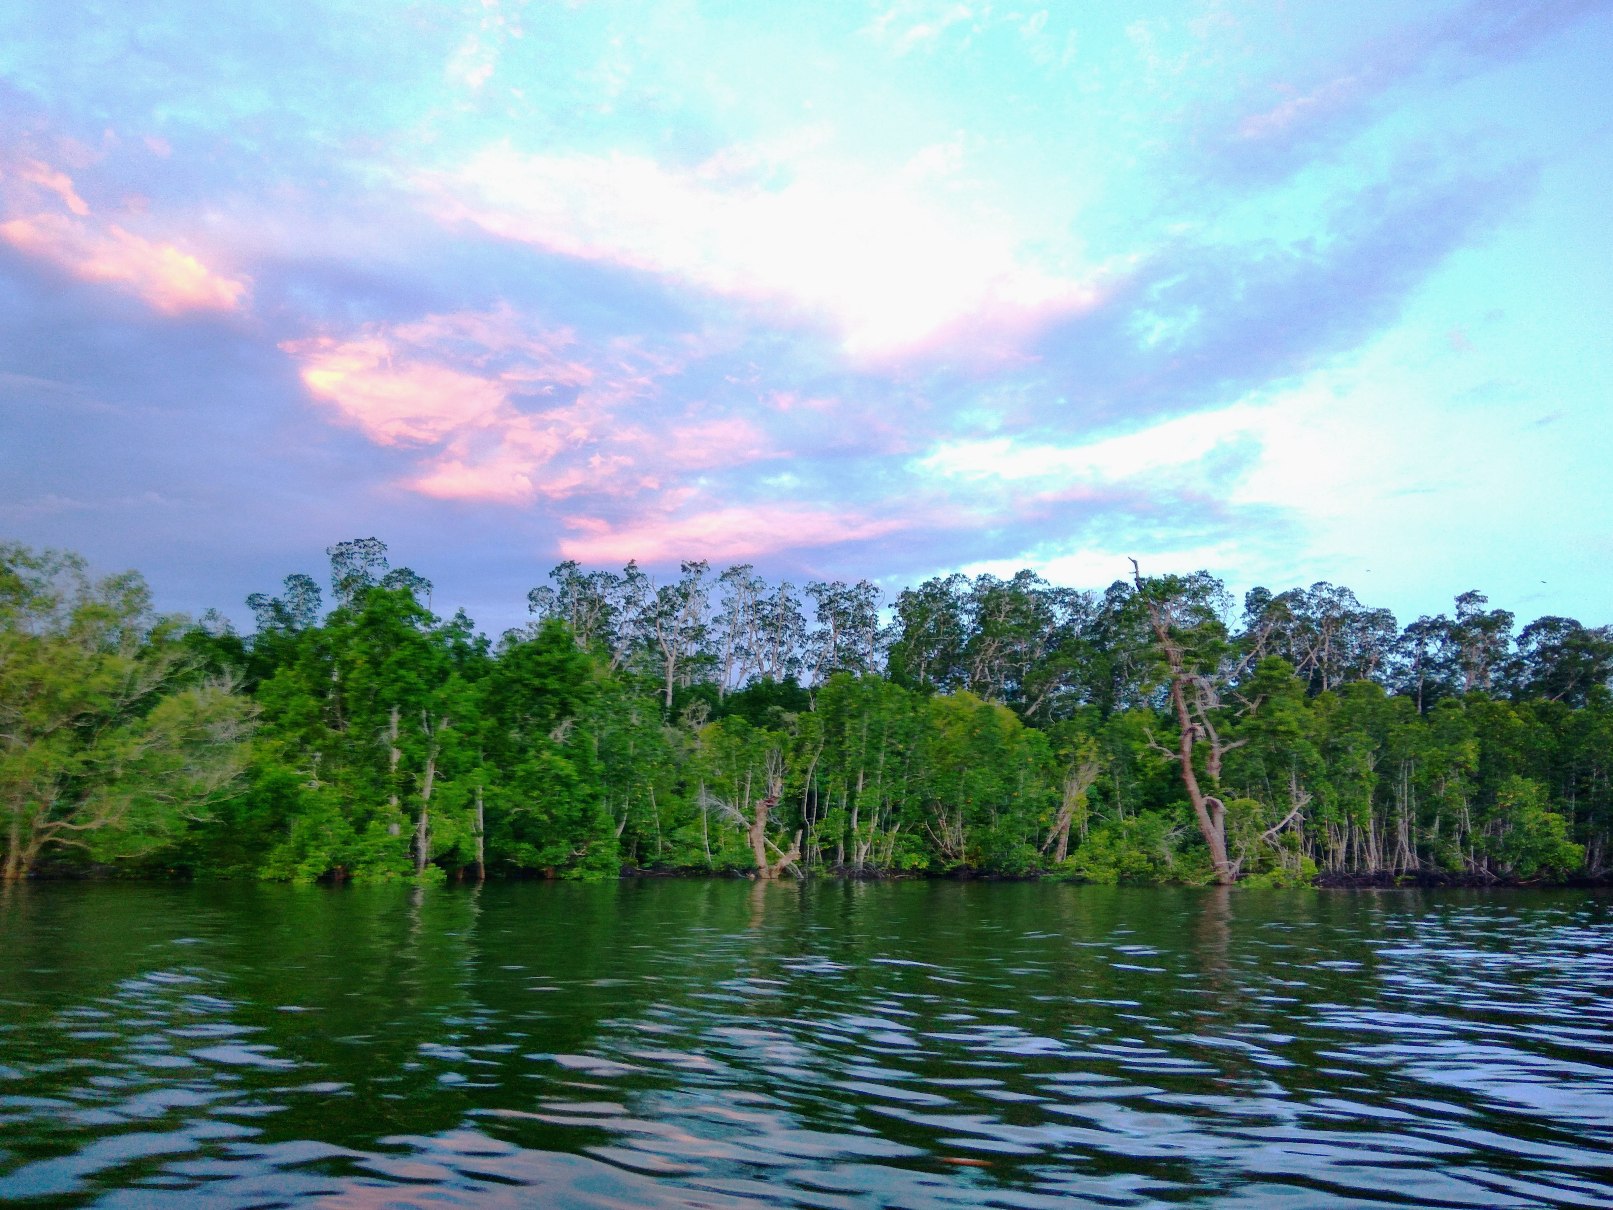 Hutan mangrove di Teluk Etna, Kabupaten Kaimana, Provinsi Papua Barat yang masih asri. Mangrove di Teluk Etna menjadi bagian dari mangrove Kaimana yang terluas di Indonesia. Foto : M Ambari 